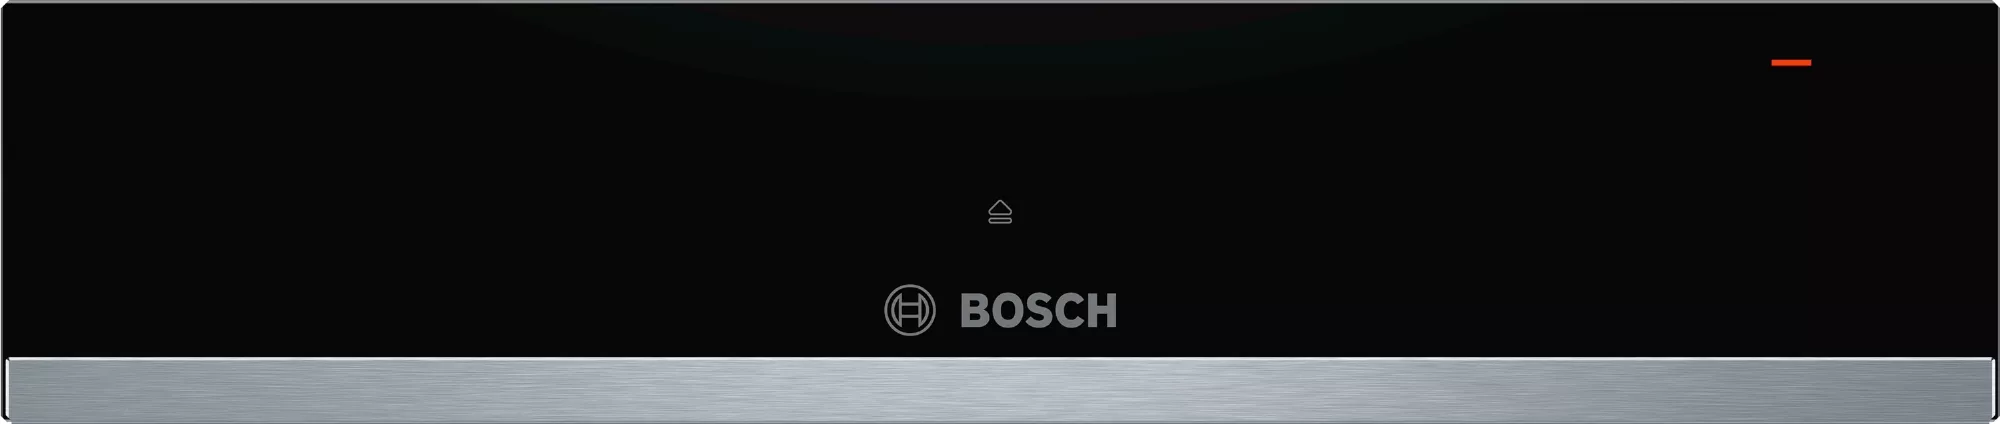 Bosch Serie 6, Wärmeschublade, 60 x 14 cm, Edelstahl, BIC510NS0